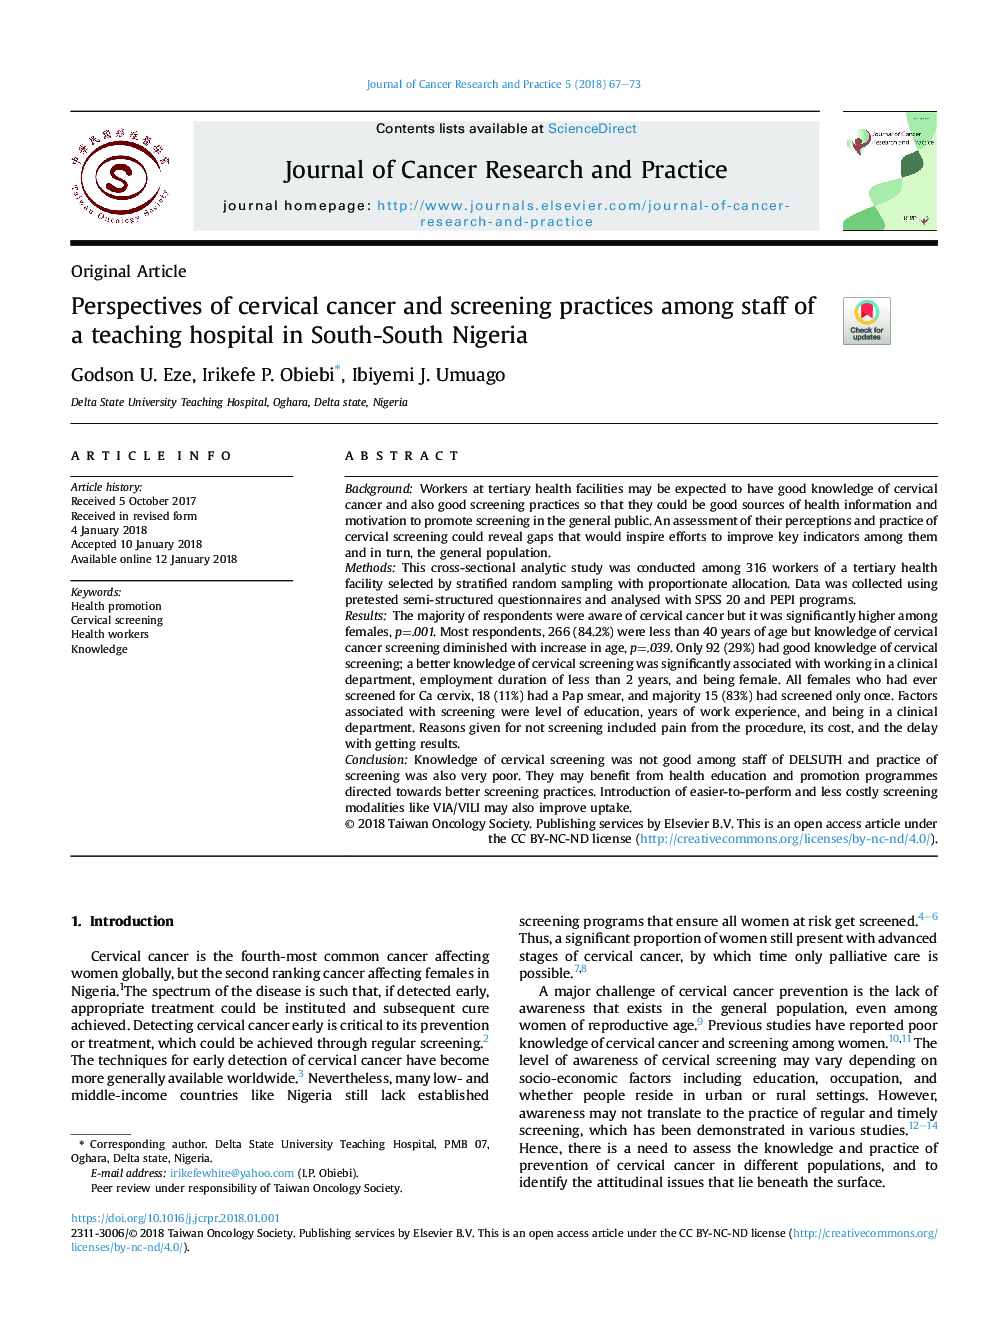 چشم انداز سرطان دهانه رحم و شیوه های غربالگری در میان کارکنان یک بیمارستان آموزشی در نیجریه جنوبی 